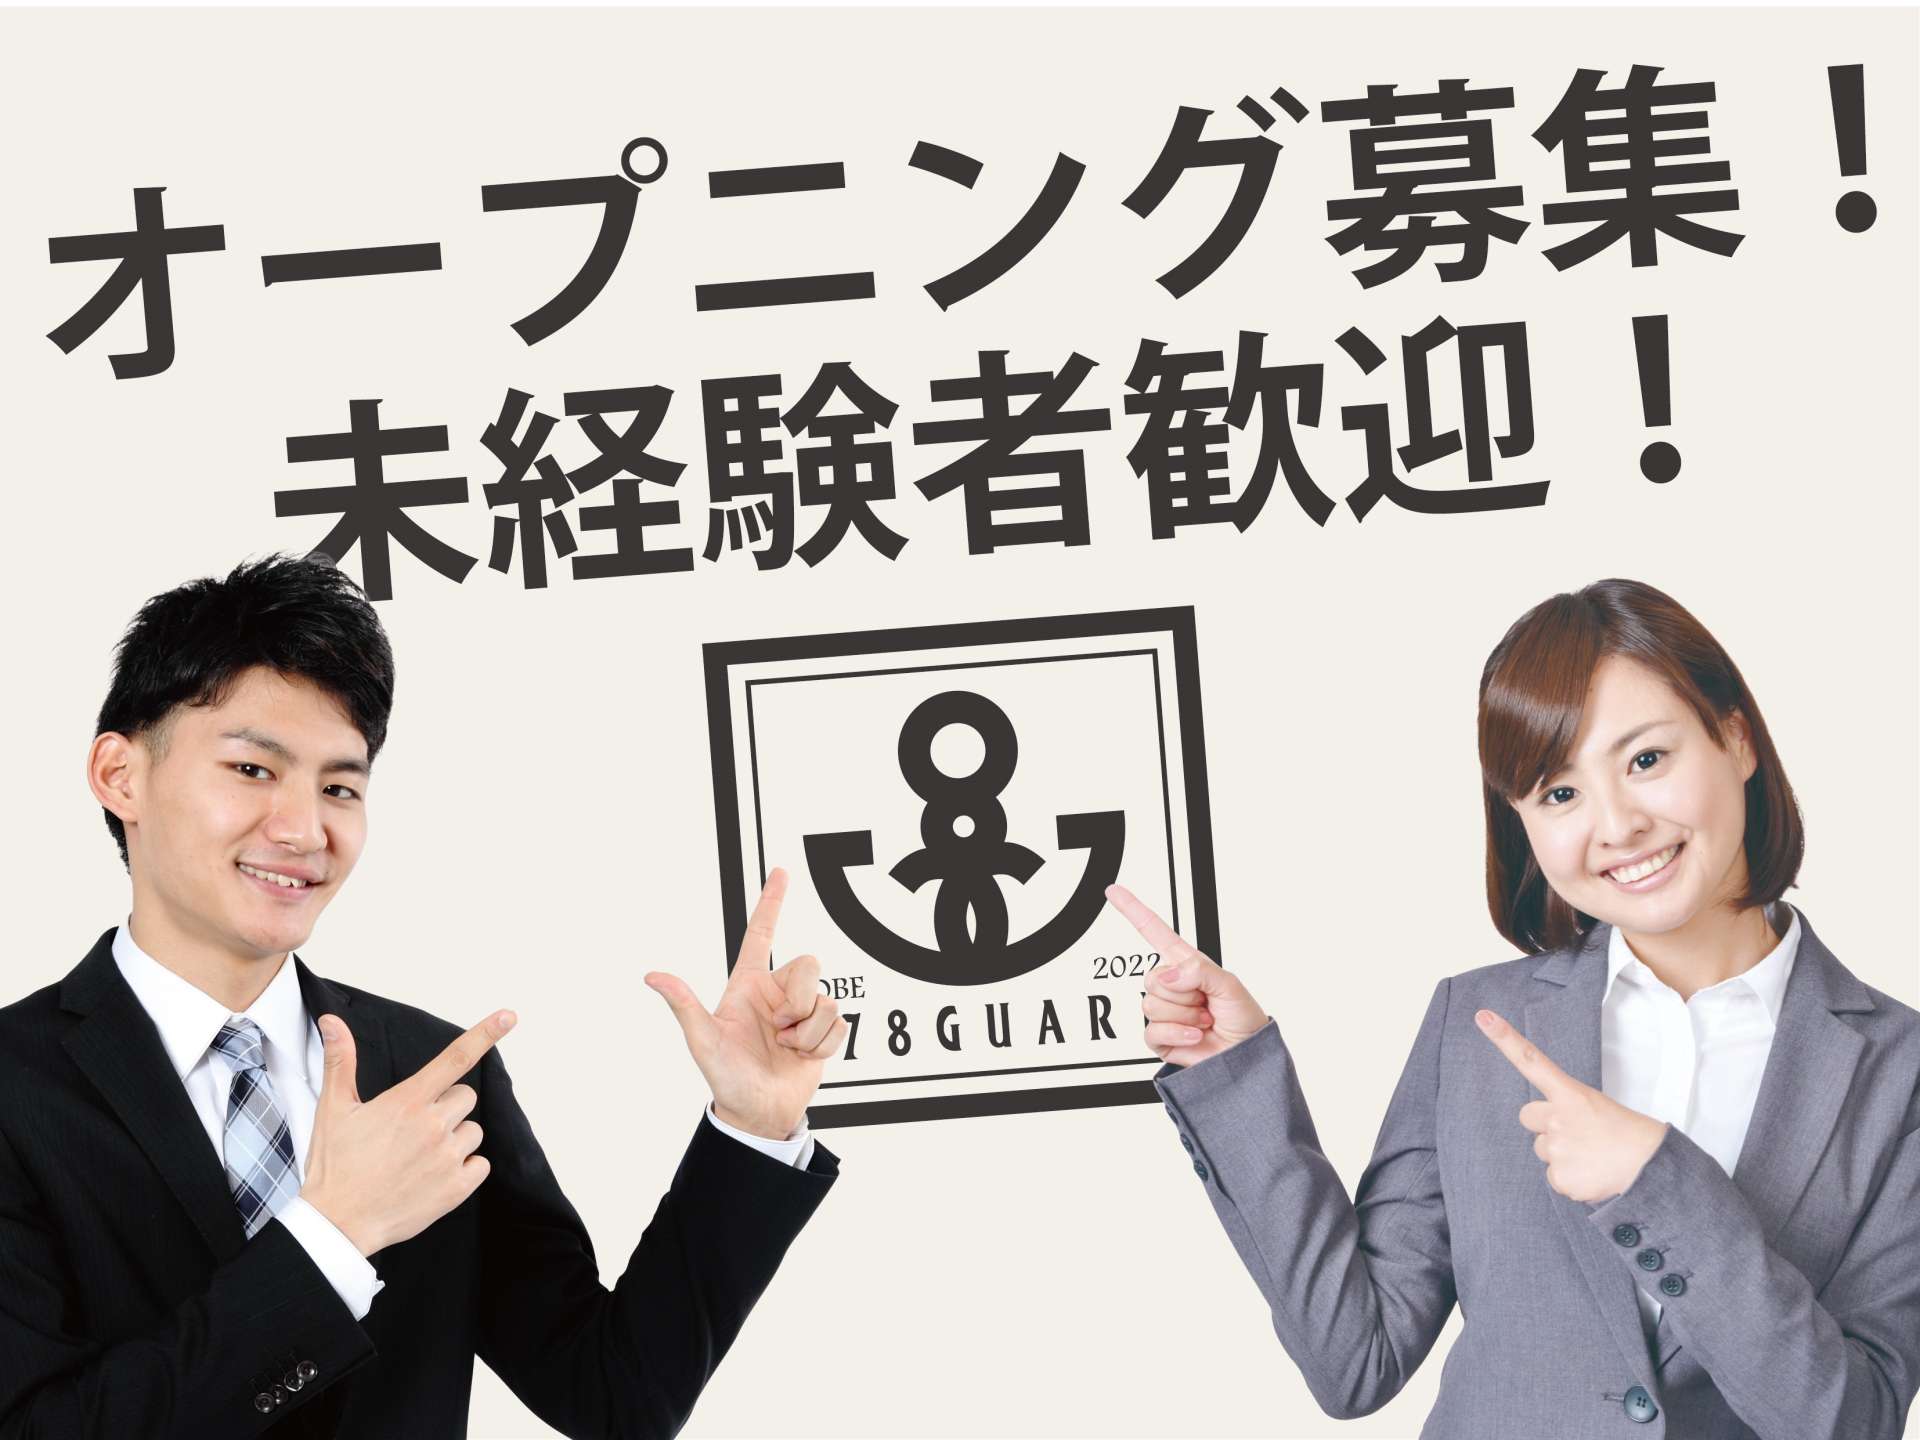 神戸の安心のシンボルを目指す警備会社078ガード！神戸タータン情報や求人情報、お仕事の情報を配信中♪